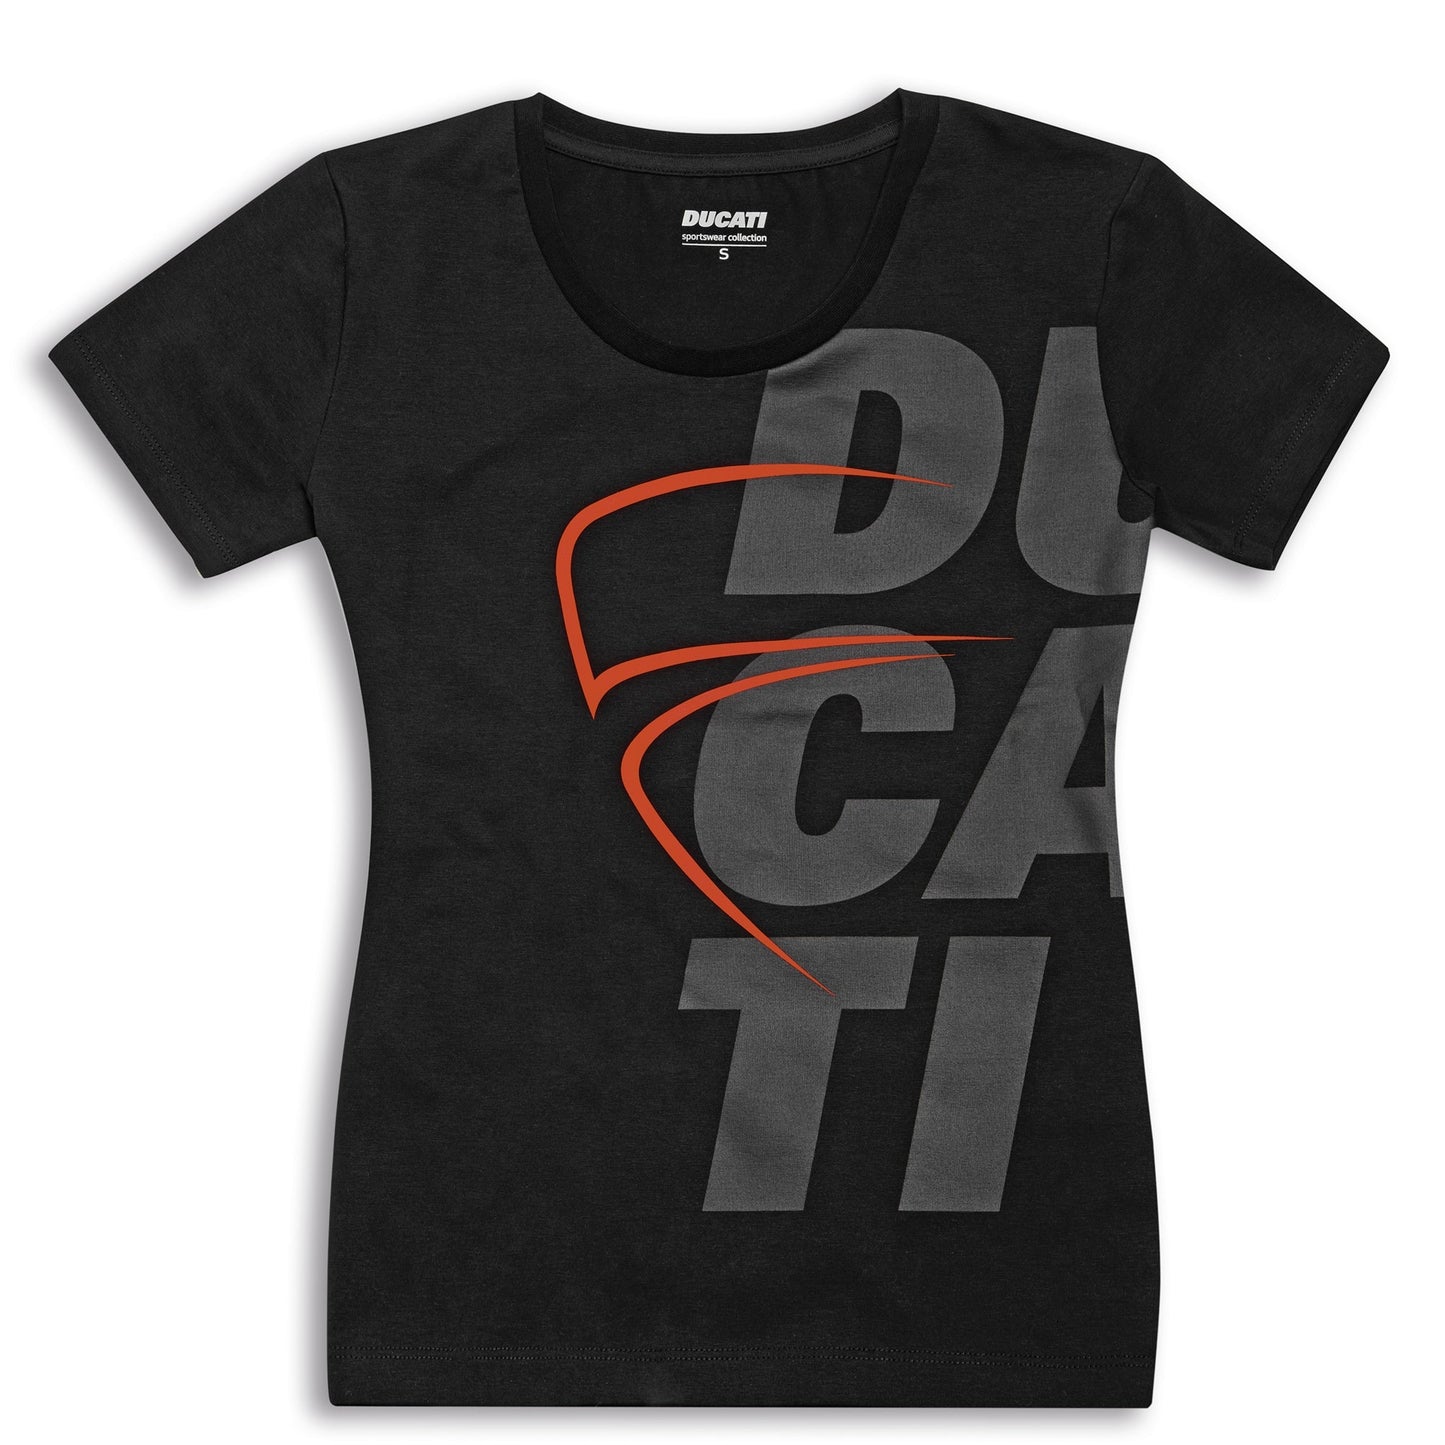 Ducati Sketch 2.0 Women's T-Shirt